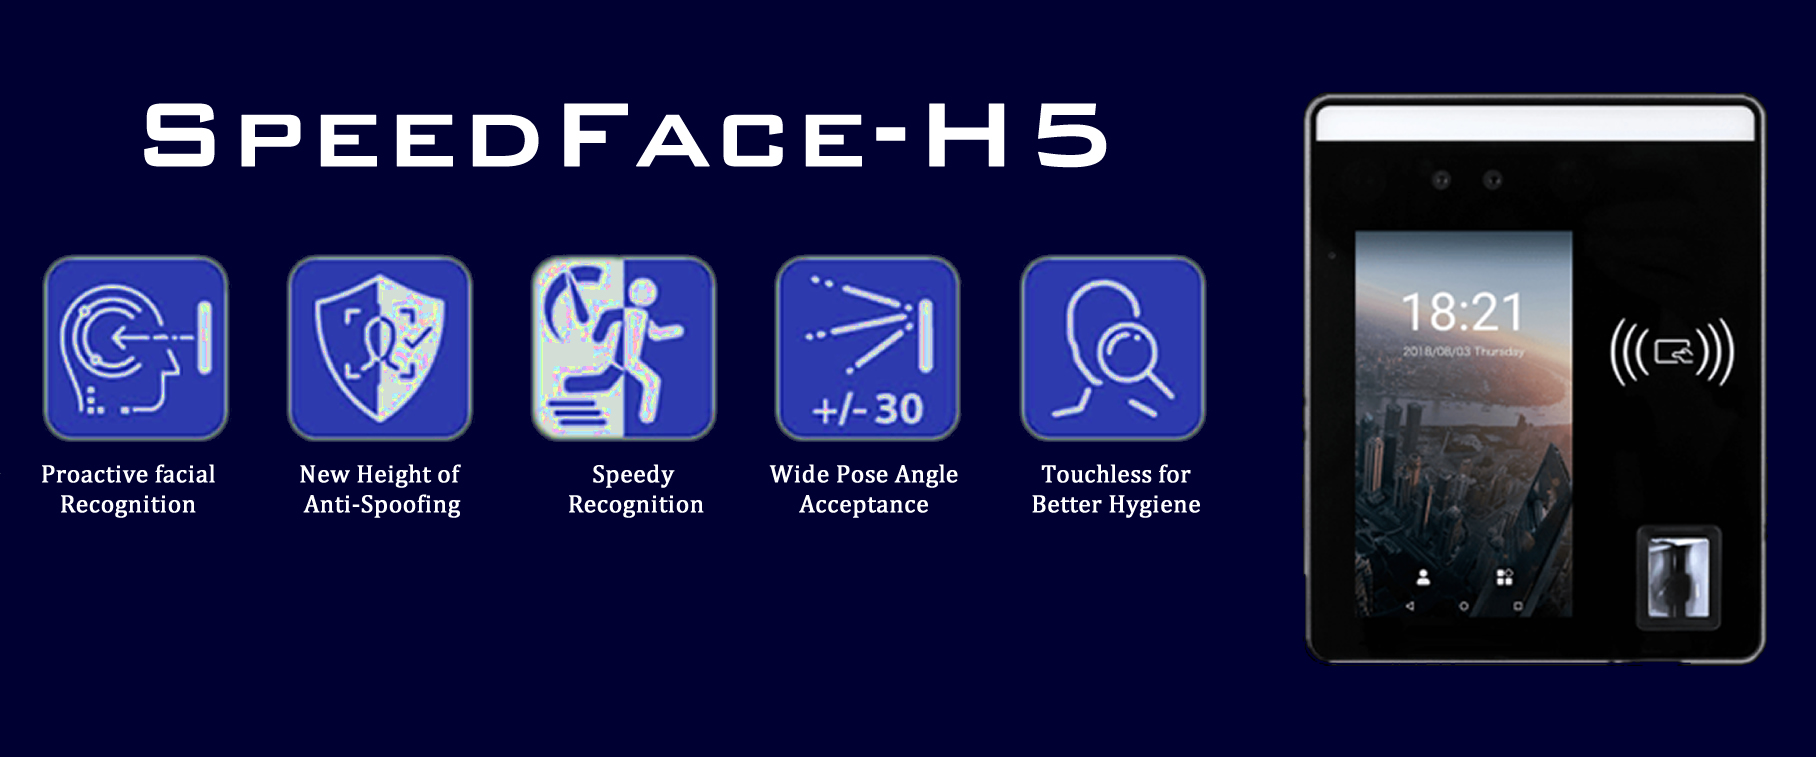 SpeedFaceH5 Facial reader banner